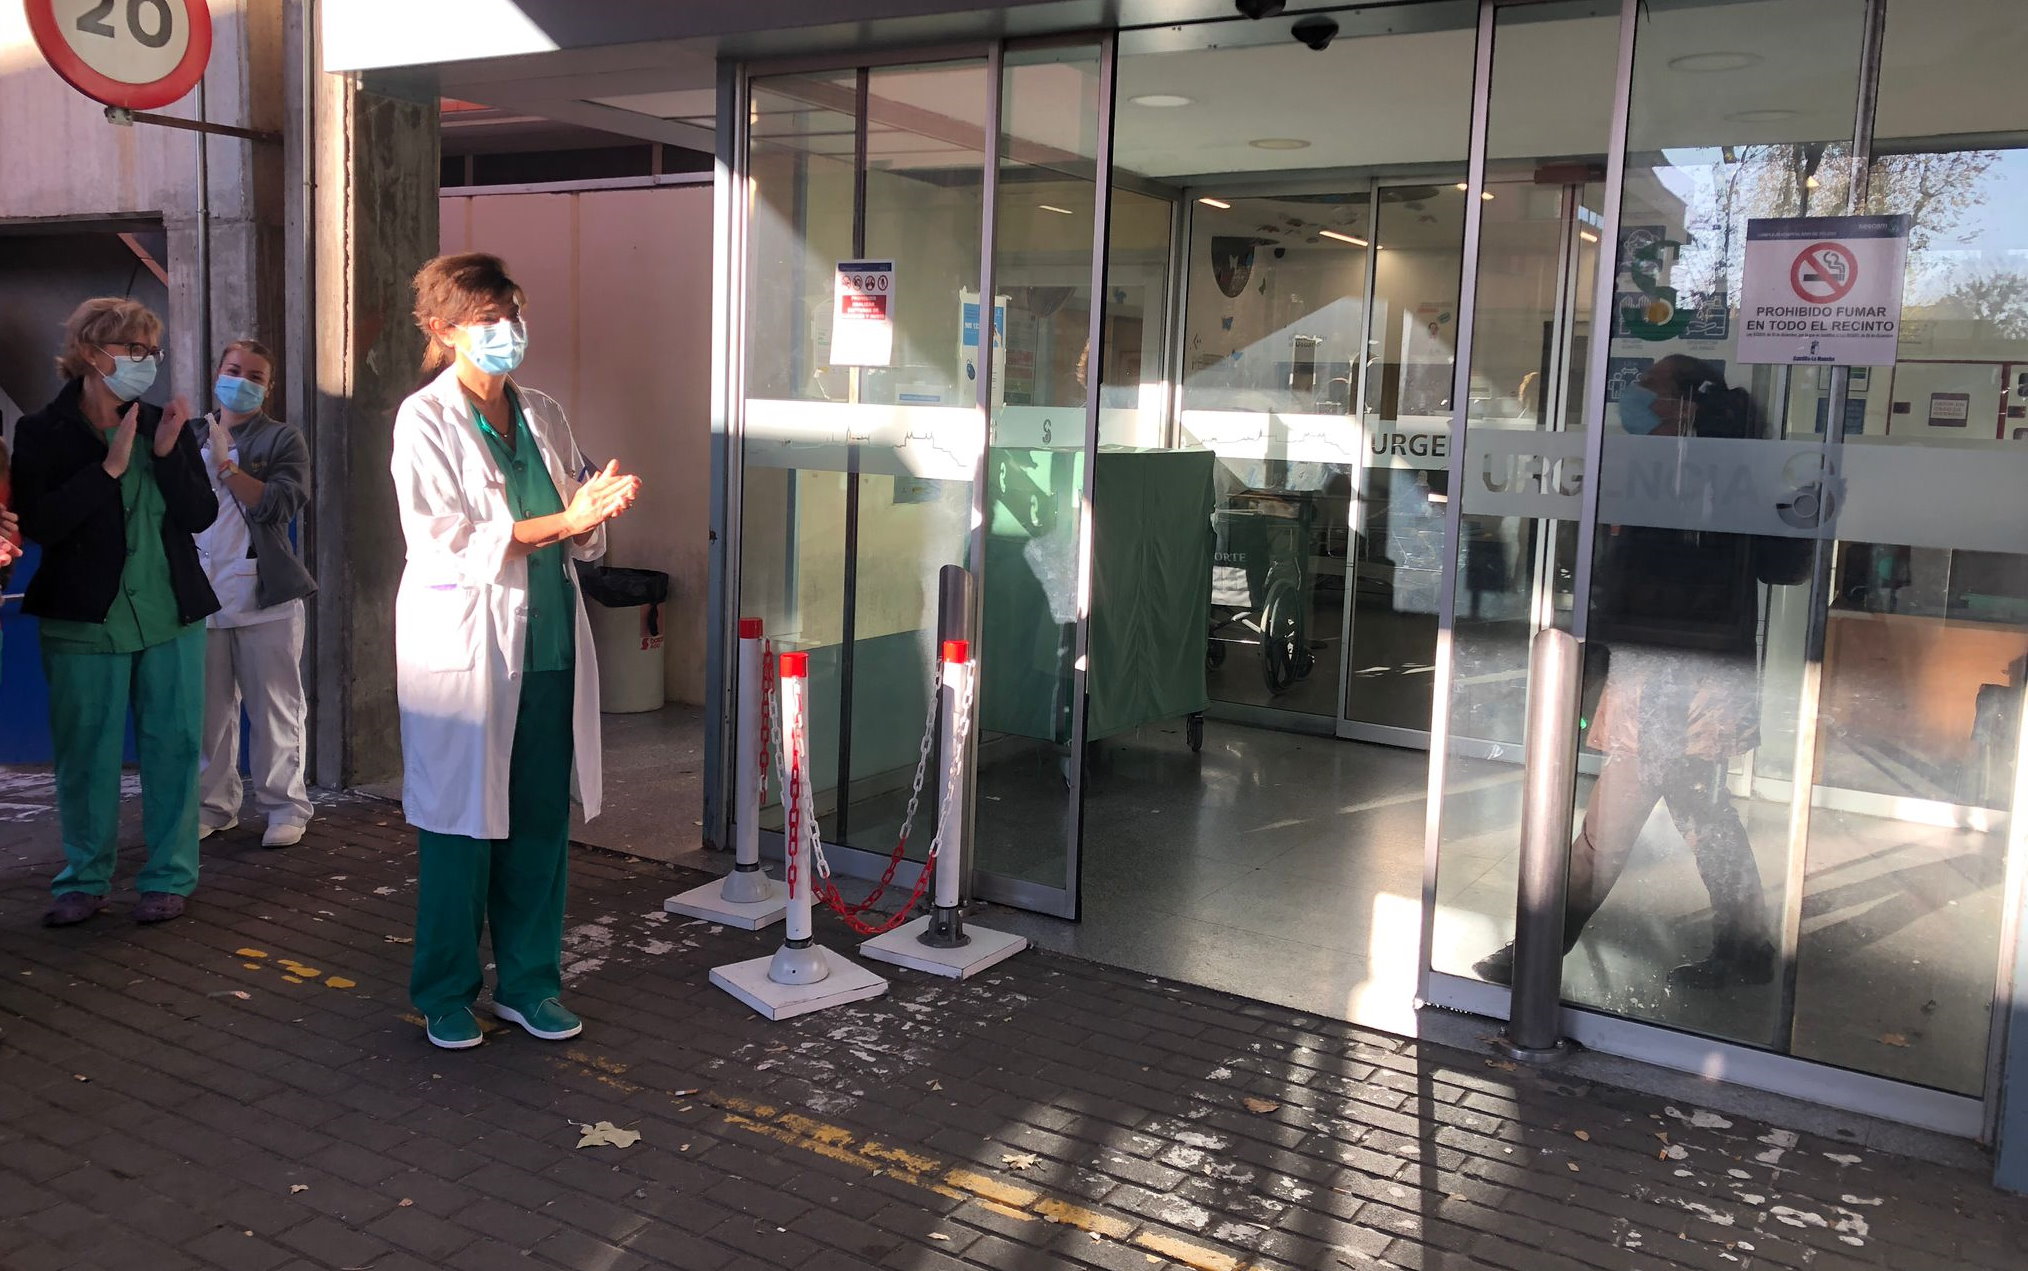 Nati Laín, médica de Urgencias y presidenta del Colegio de Médicos de Toledo, ha cerrado oficialmente la puerta de las Urgencias.